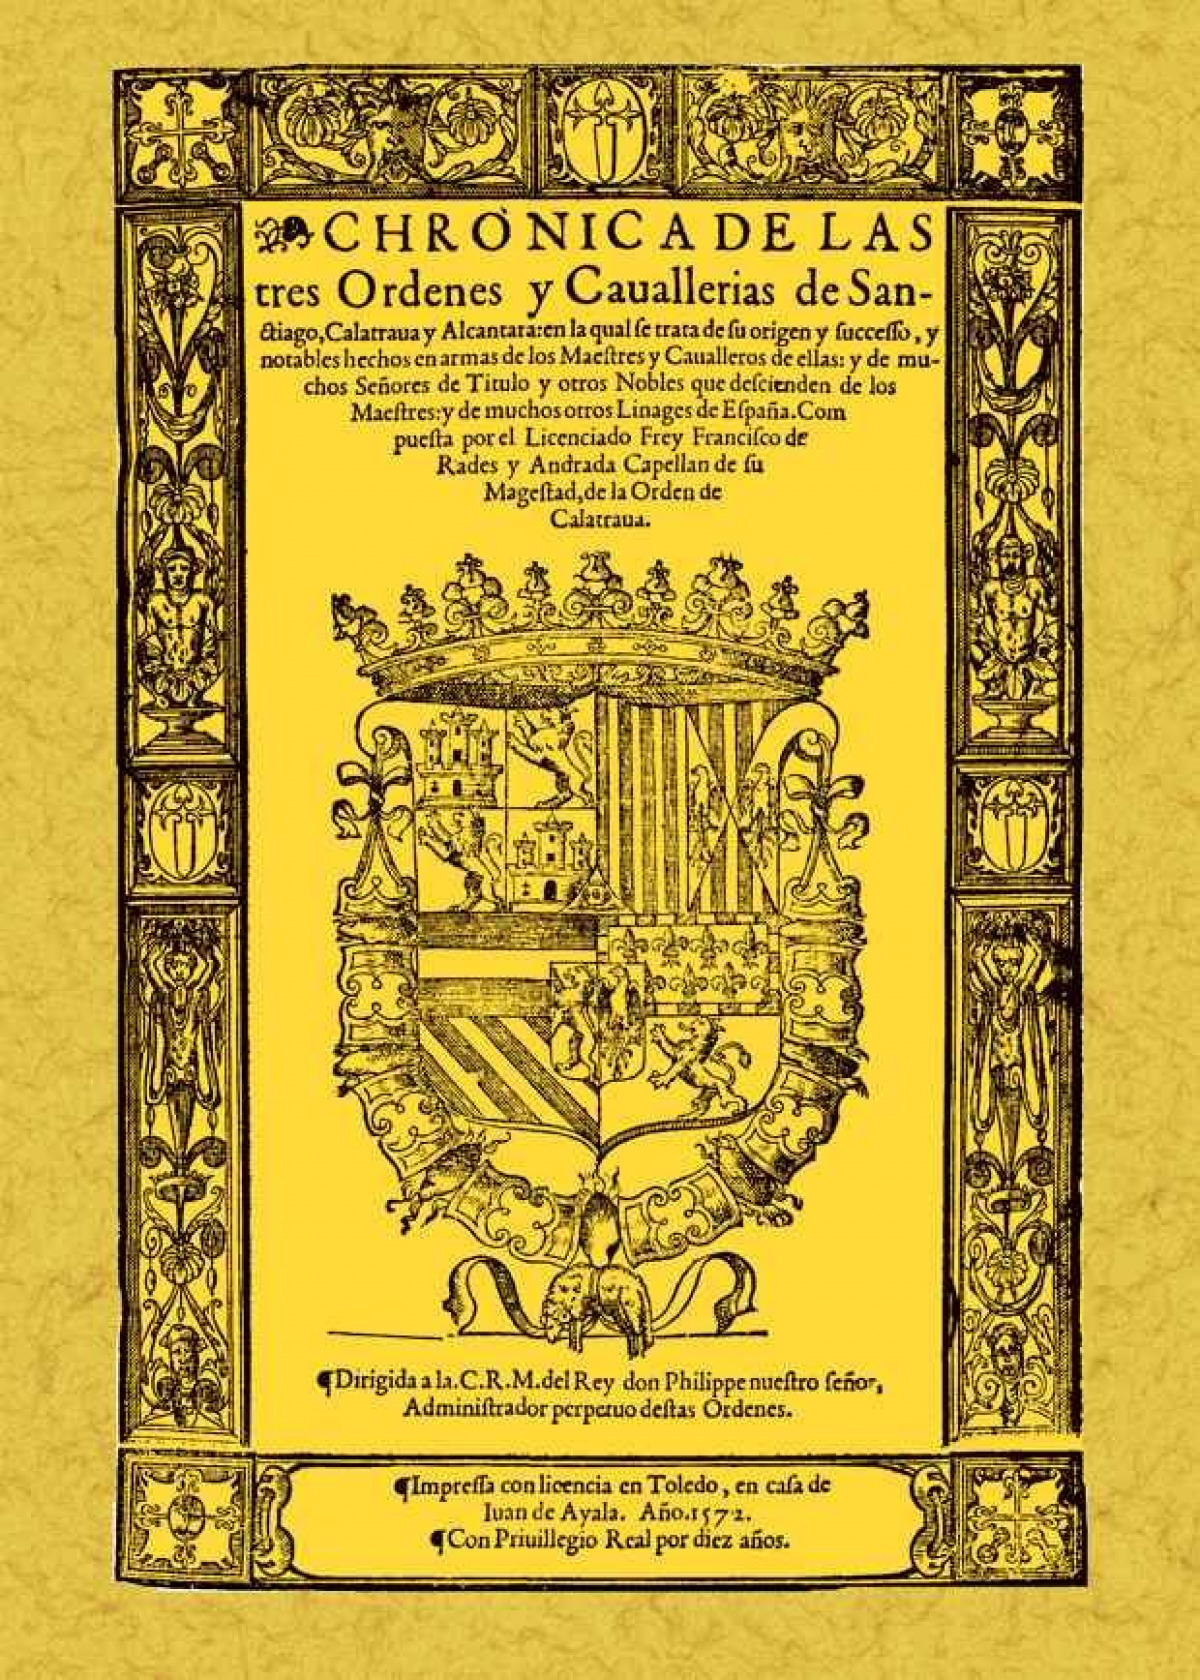 Crónica de las tres órdenes de Santiago, Calatrava y Alcántara - Rades y Andrada, Francisco de